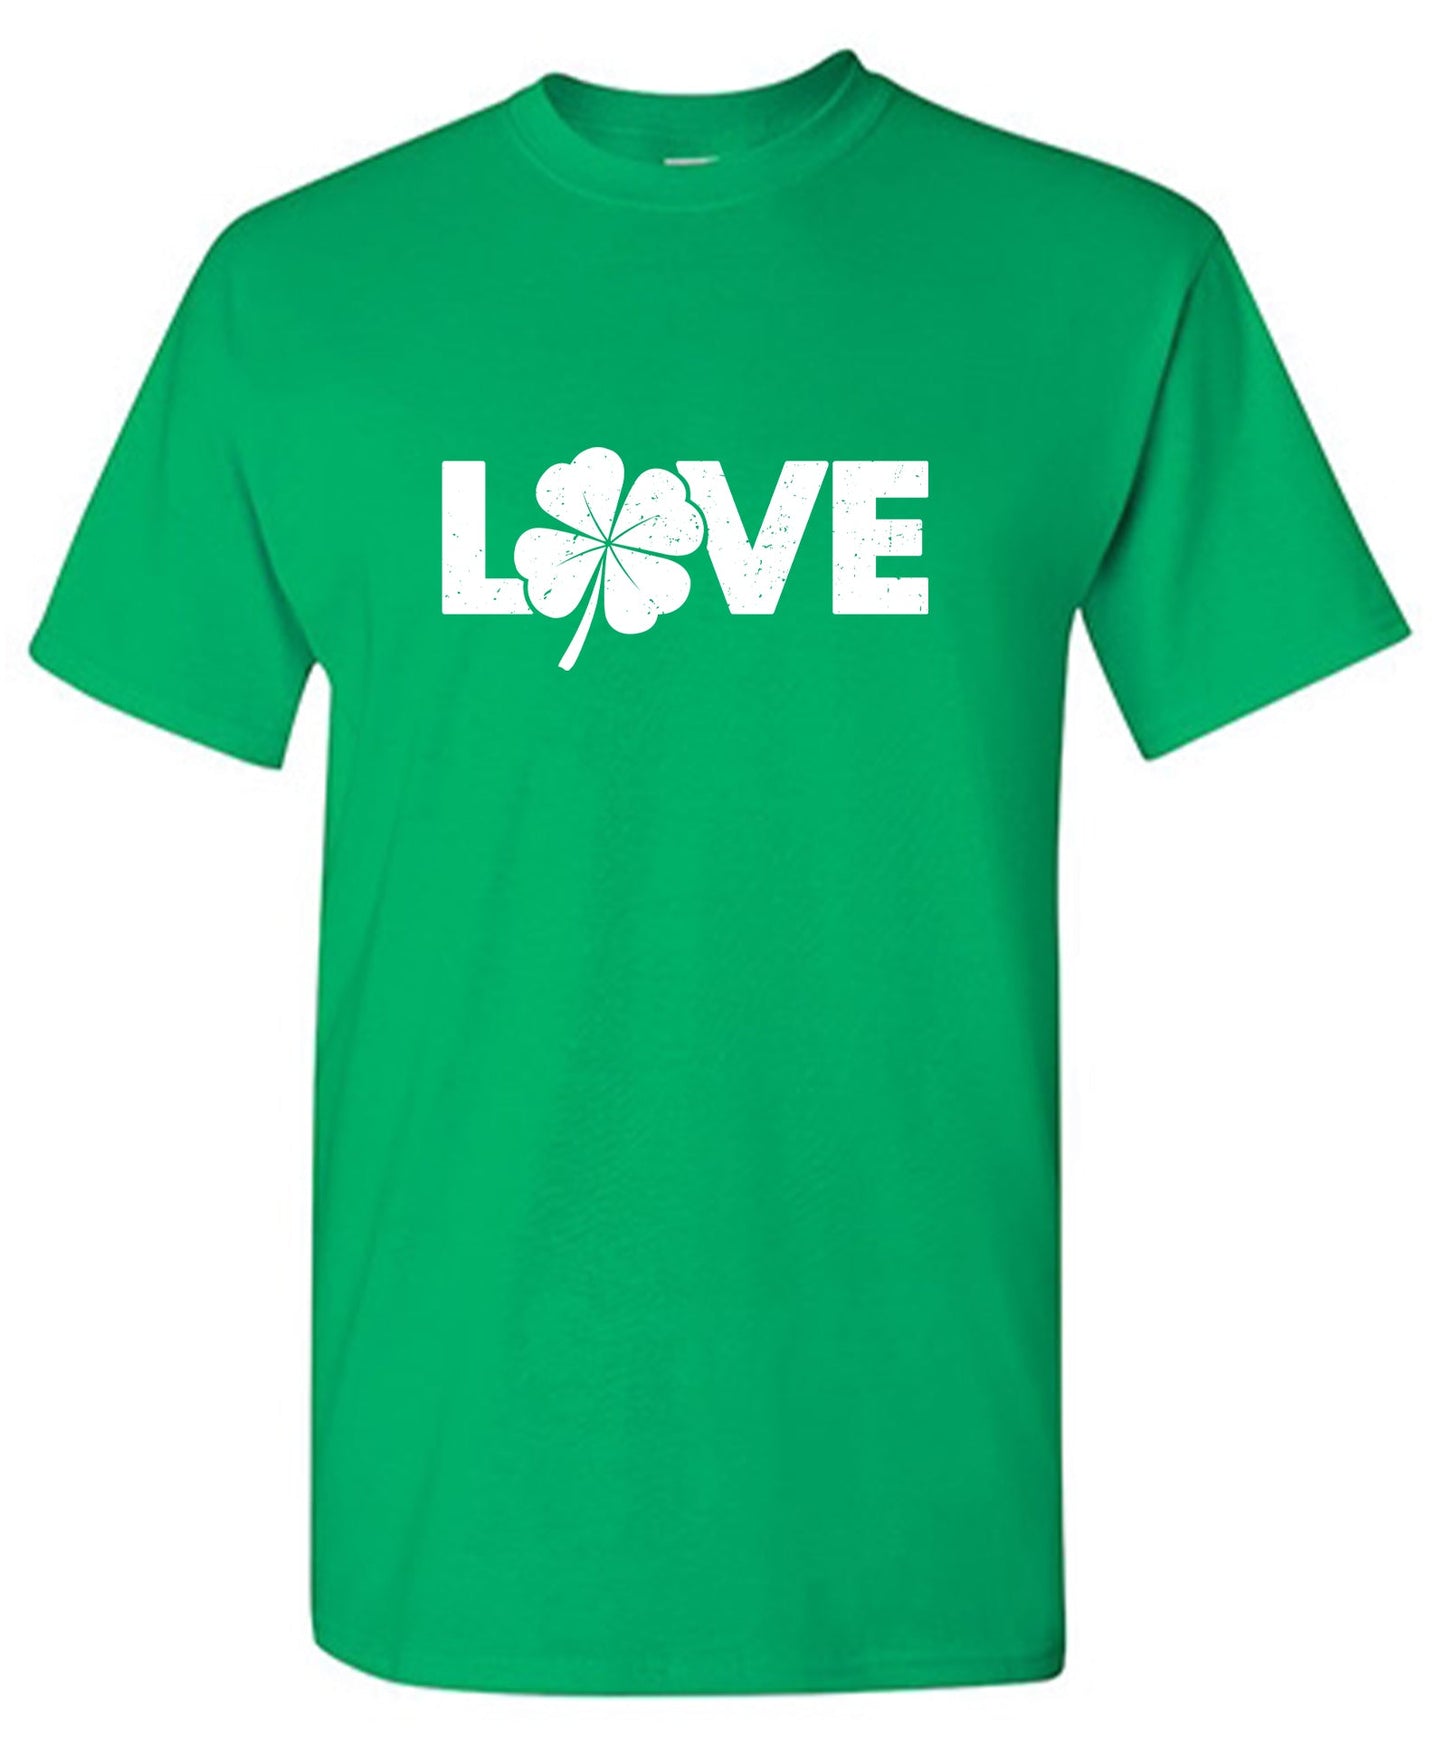 Love Irish Shirt